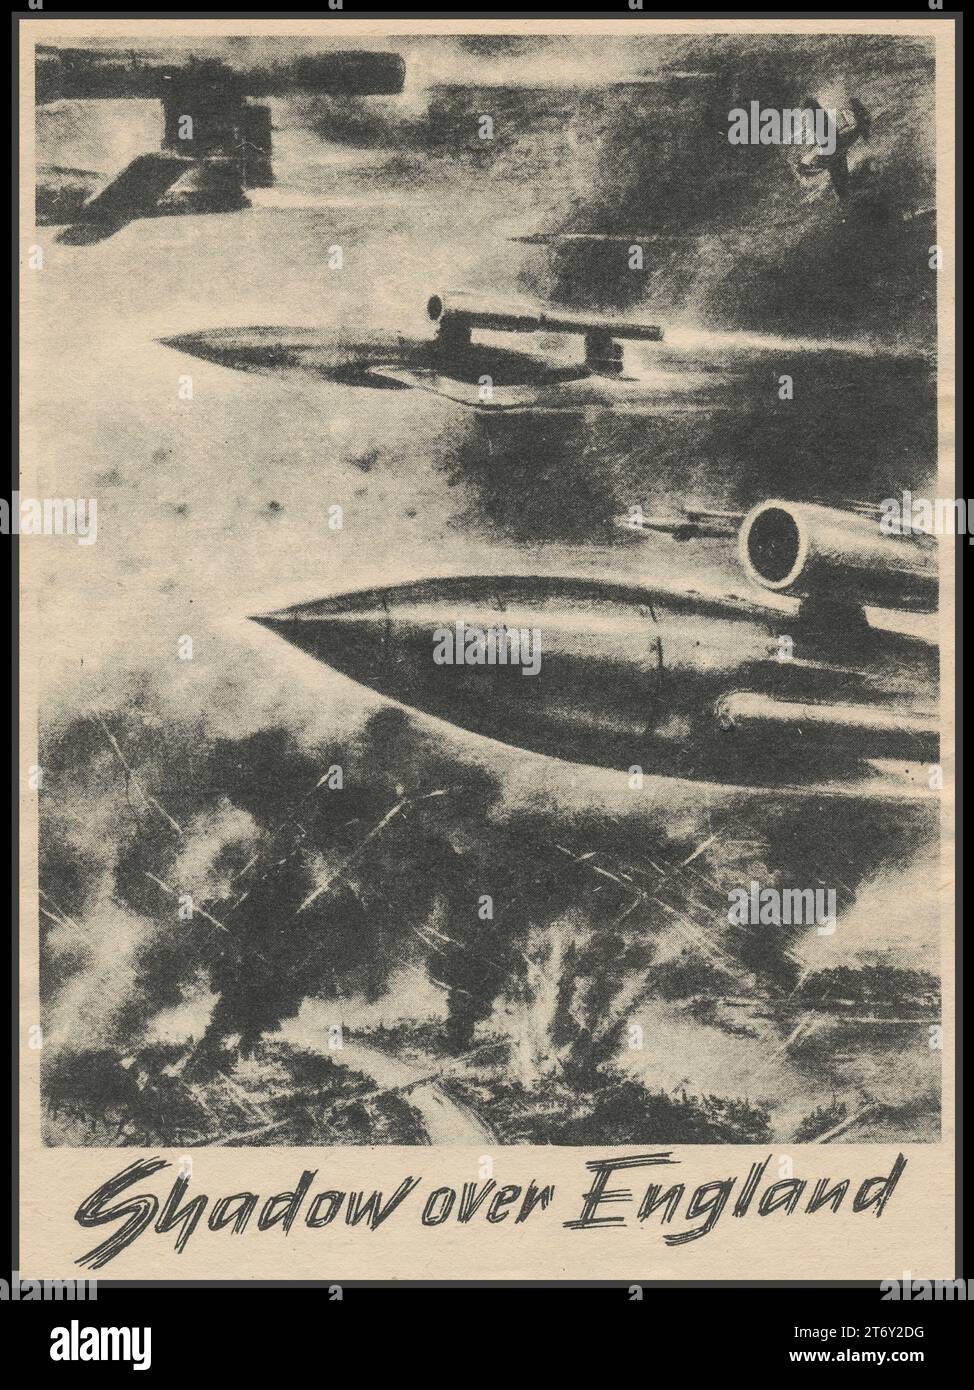 WW2 Nazi V1 Rocket Flying Bomb opuscolo propagandistico Drop poster card 1940, progettato per terrorizzare il pubblico britannico con bombardamenti civili indiscriminati. Titolo "OMBRA SULL'INGHILTERRA" seconda guerra mondiale arma terroristica della Germania nazista Foto Stock